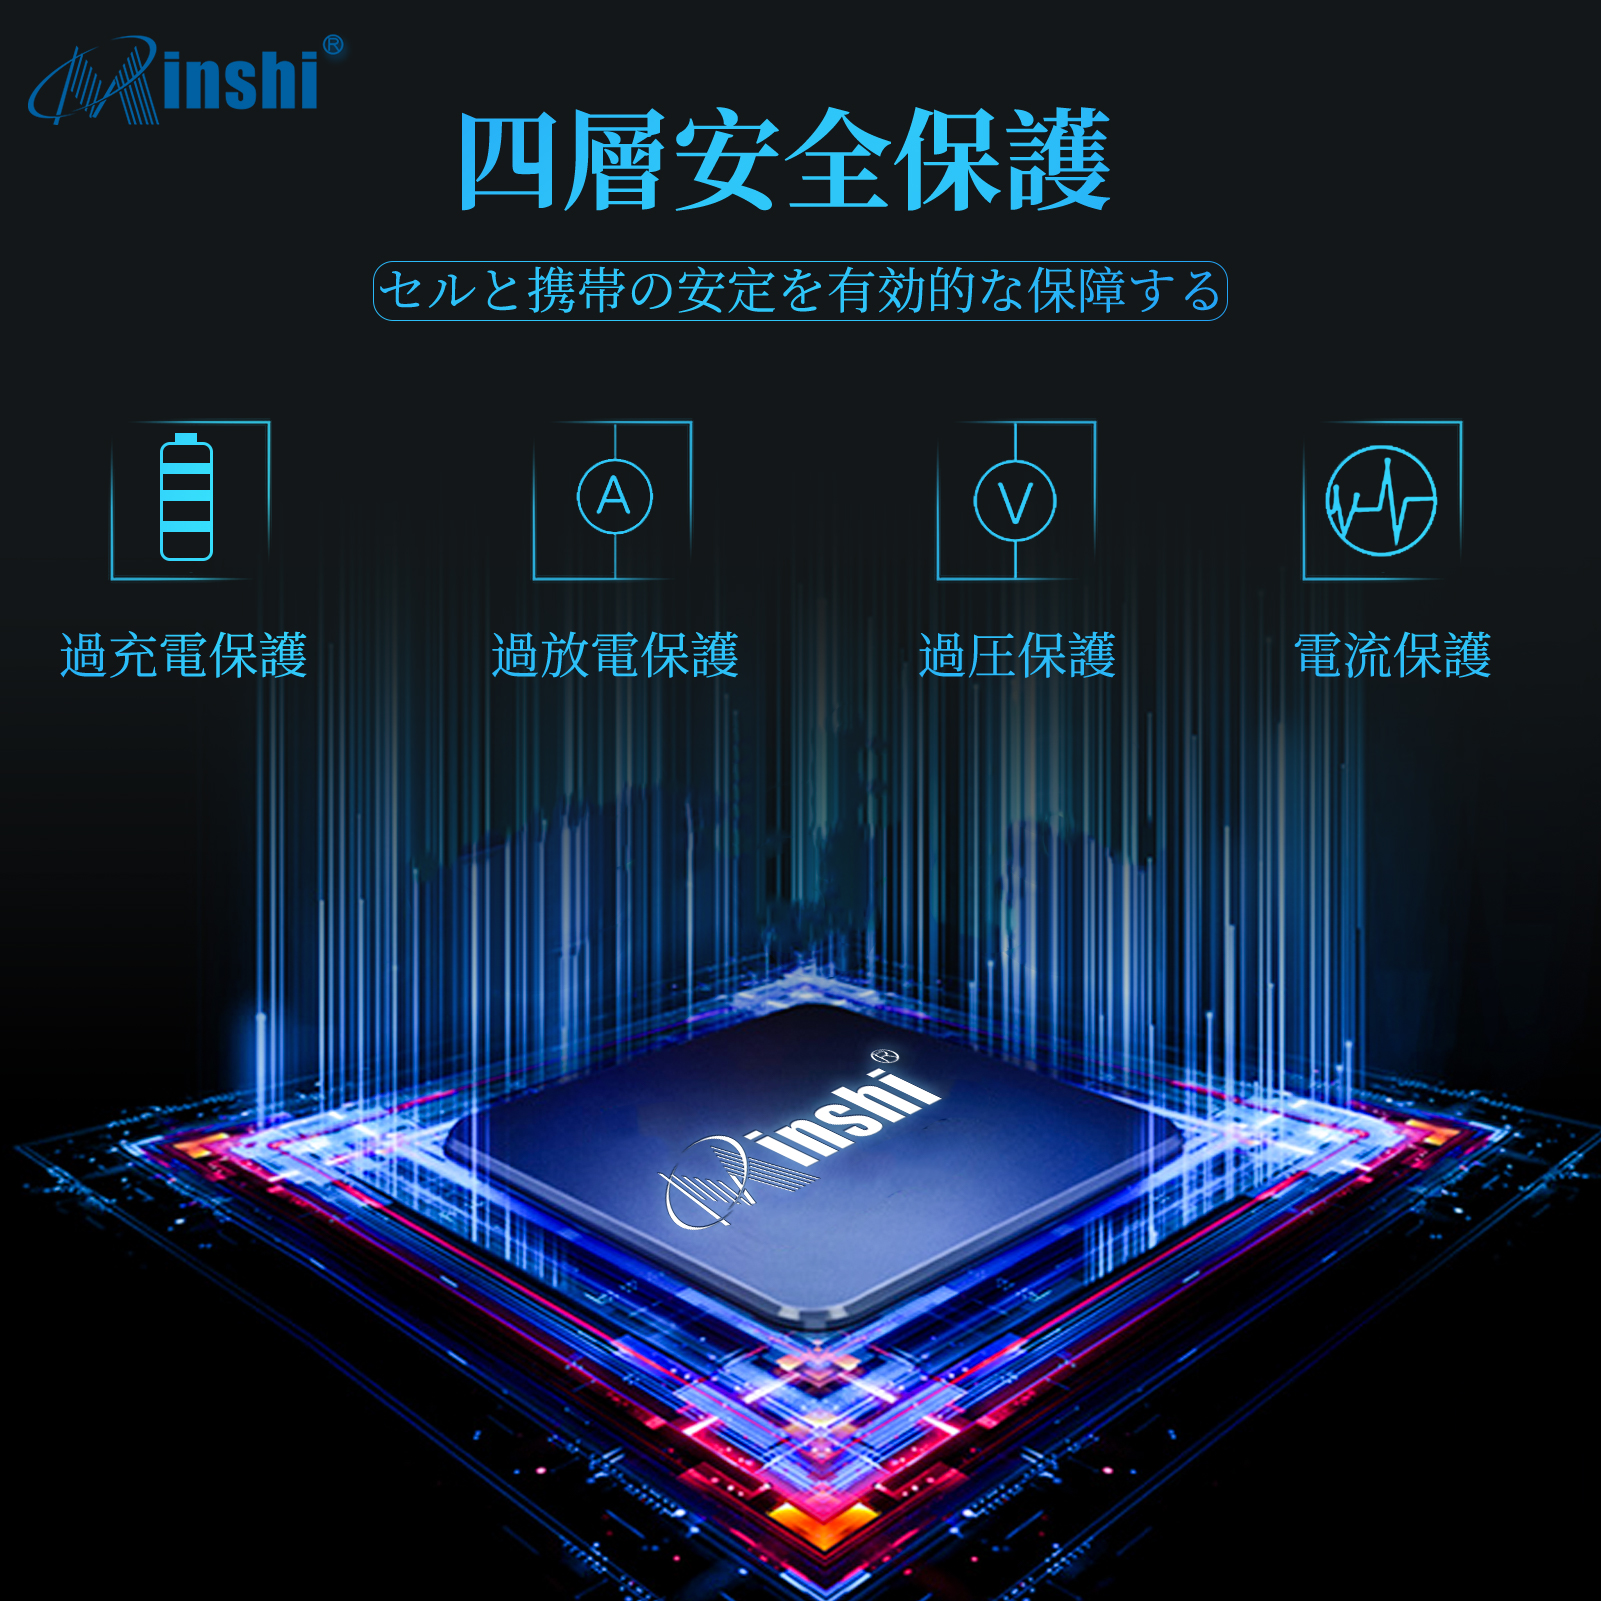  minshi XT1100 XT1103 対応 交換バッテリー  高性能 互換バッテリー